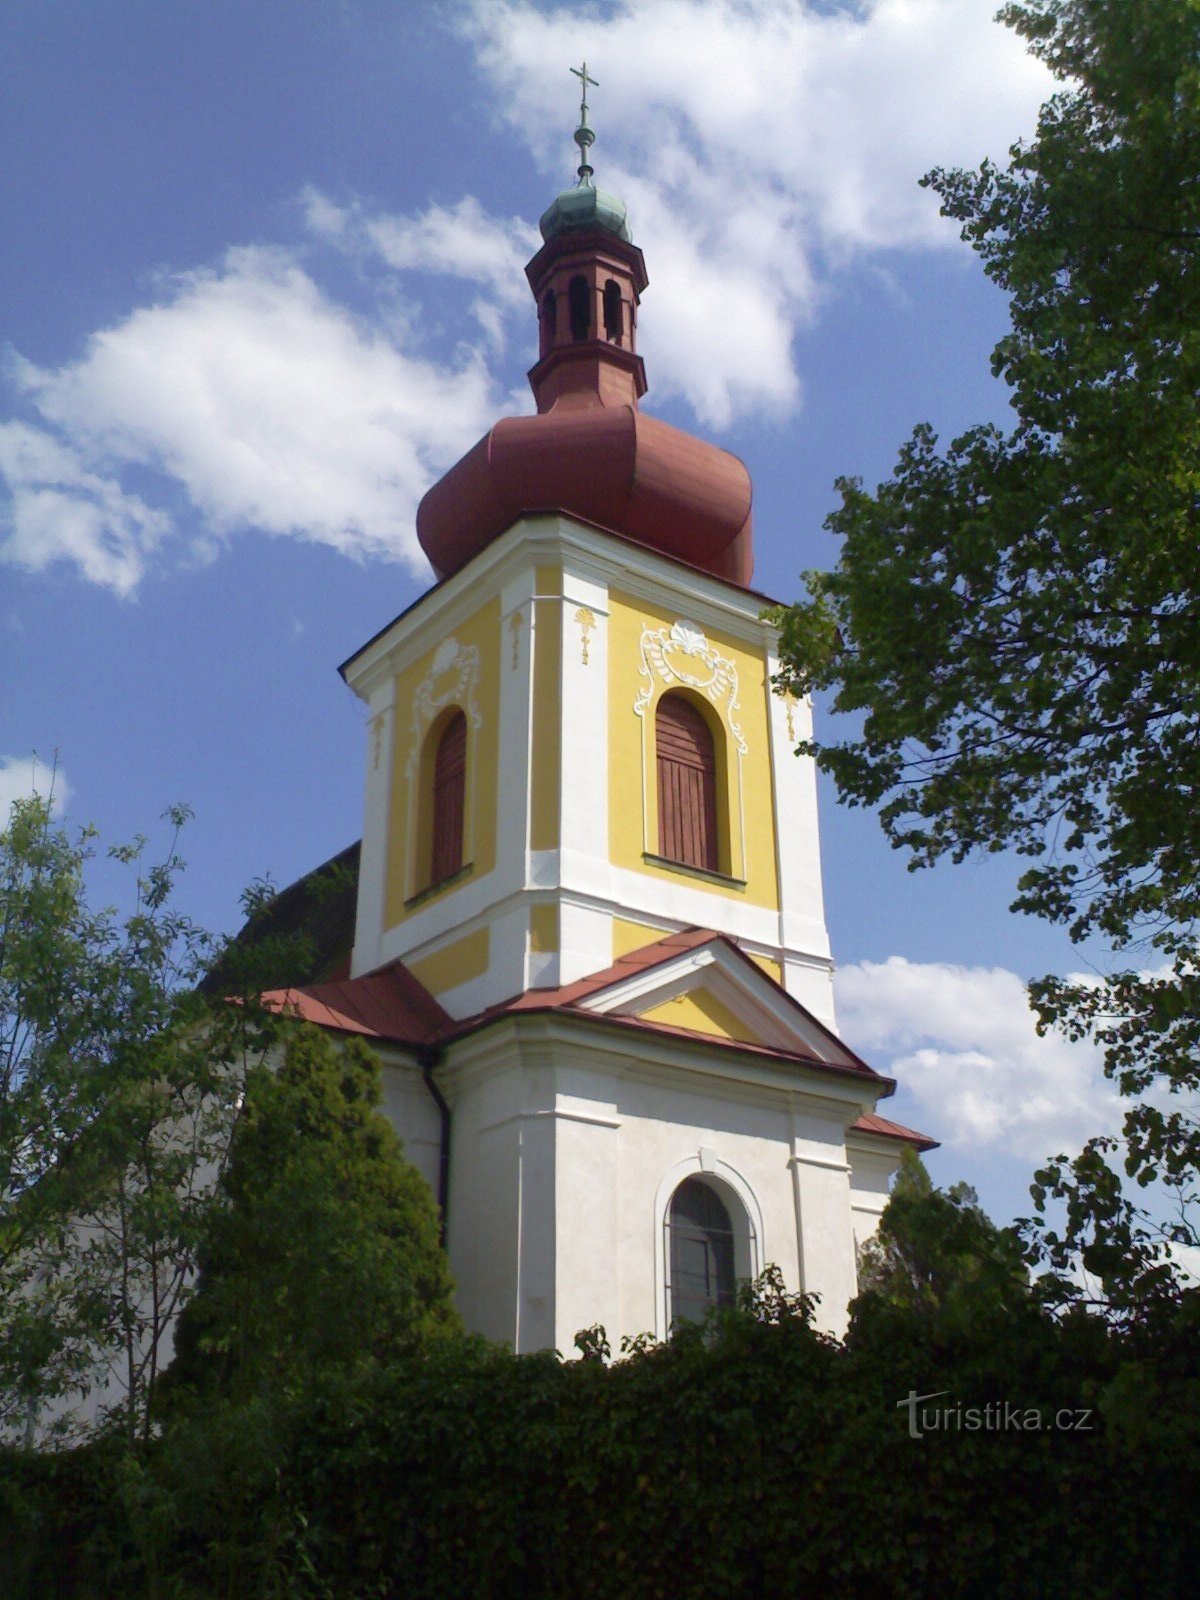 Křivice - igreja de St. Lourenço